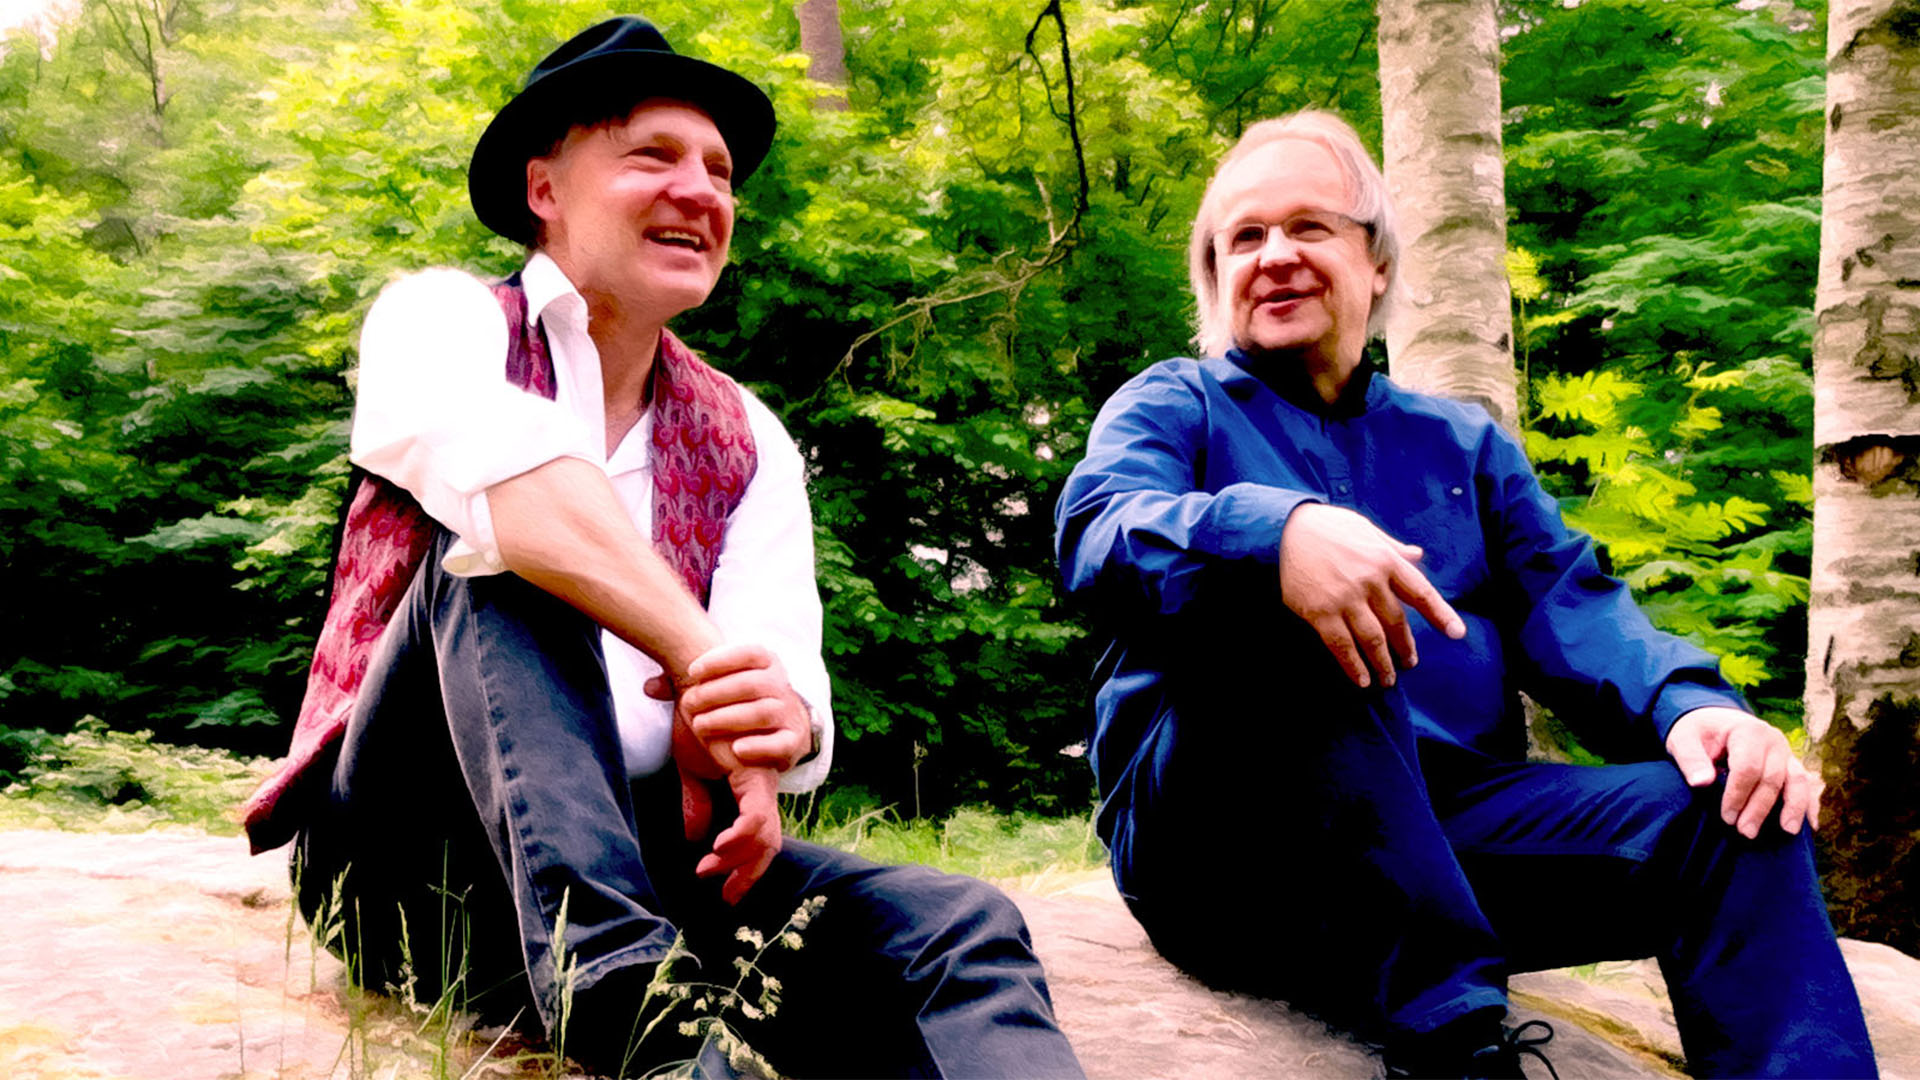 Klickbar bild I livets villervalla. Artisterna Lennart och Markku sitter avslappnat på en stenhäll med skog och gröna blad i bakgrunden. Lennart bär hatt och väst, Markku i mörkblå skjorta.